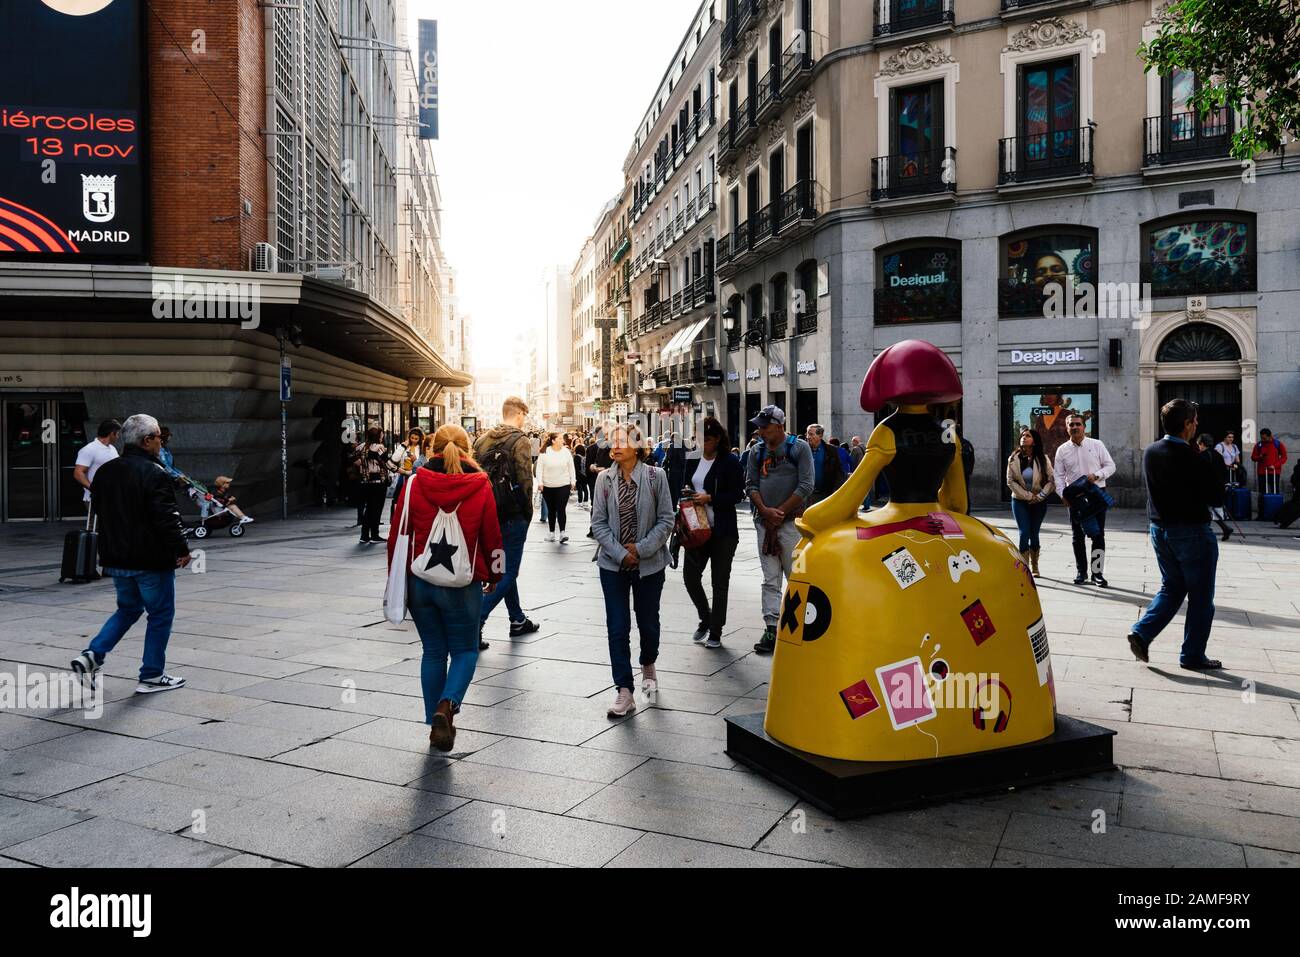 Madrid, Spagna - 1 novembre 2019: Persone in Piazza Callao e via commerciale Preciados con sole splare sullo sfondo. Madrid, Spagna Foto Stock